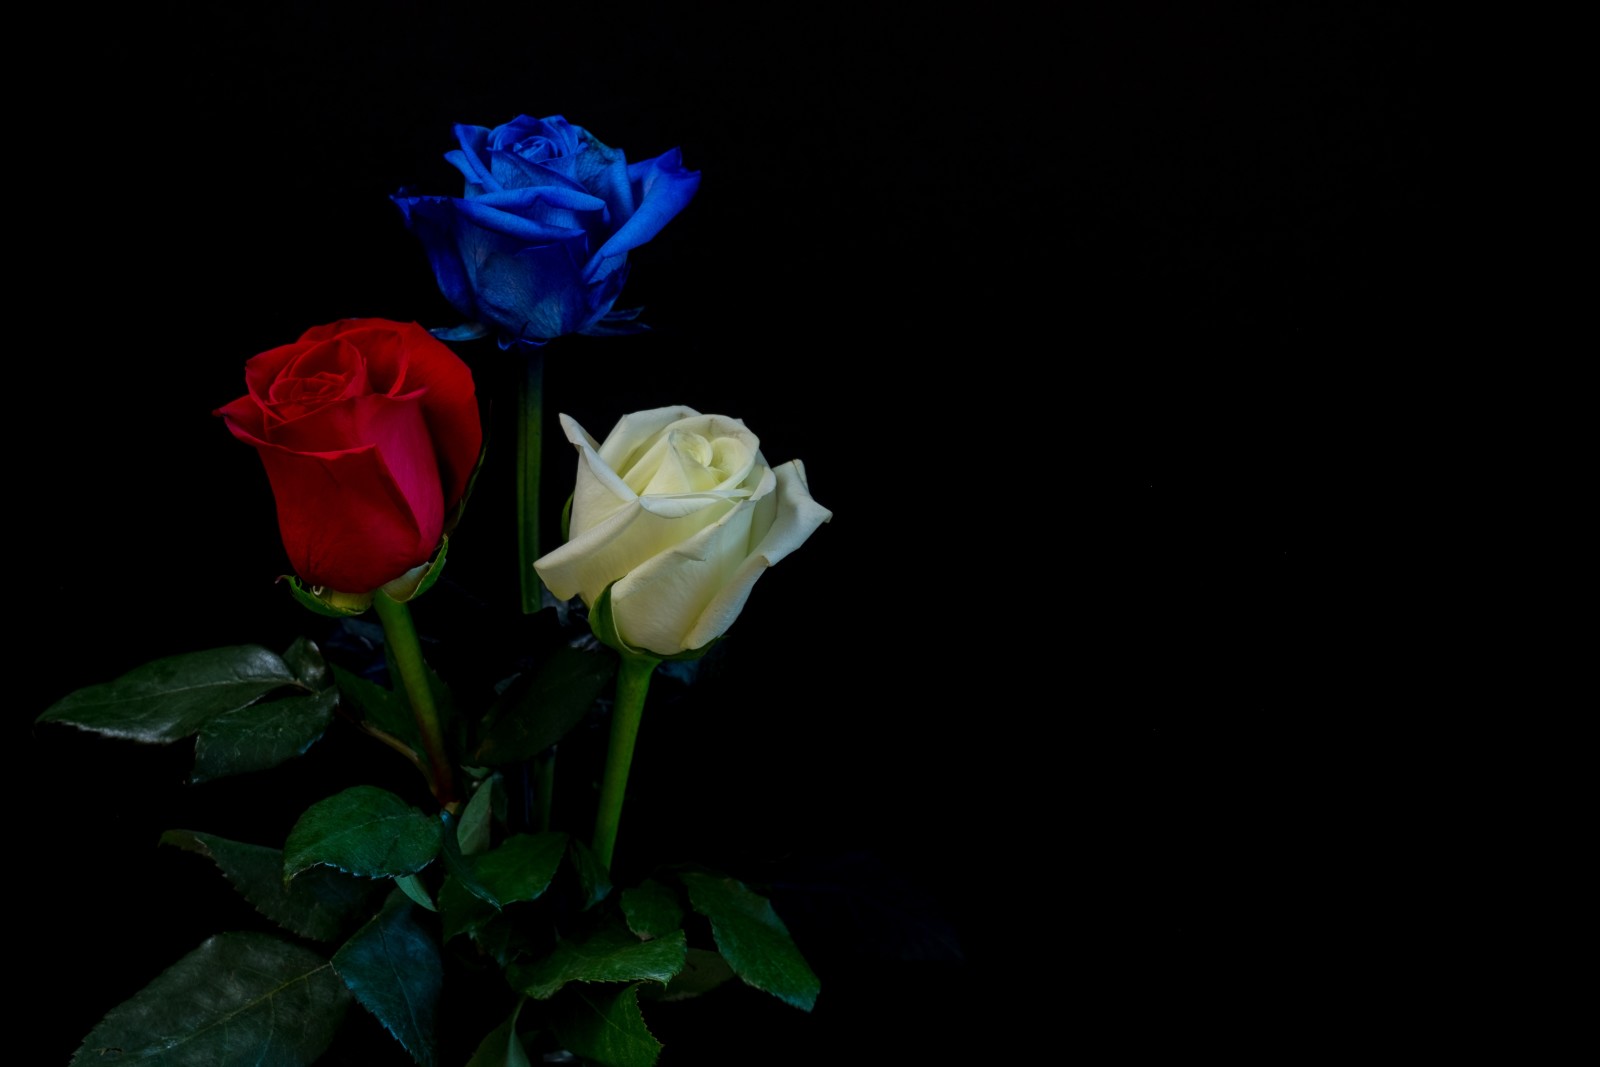 สีน้ำเงิน, สีแดง, ดอกกุหลาบ, พื้นหลังสีดำ, ขาว, ใบไม้, สาม, ตา